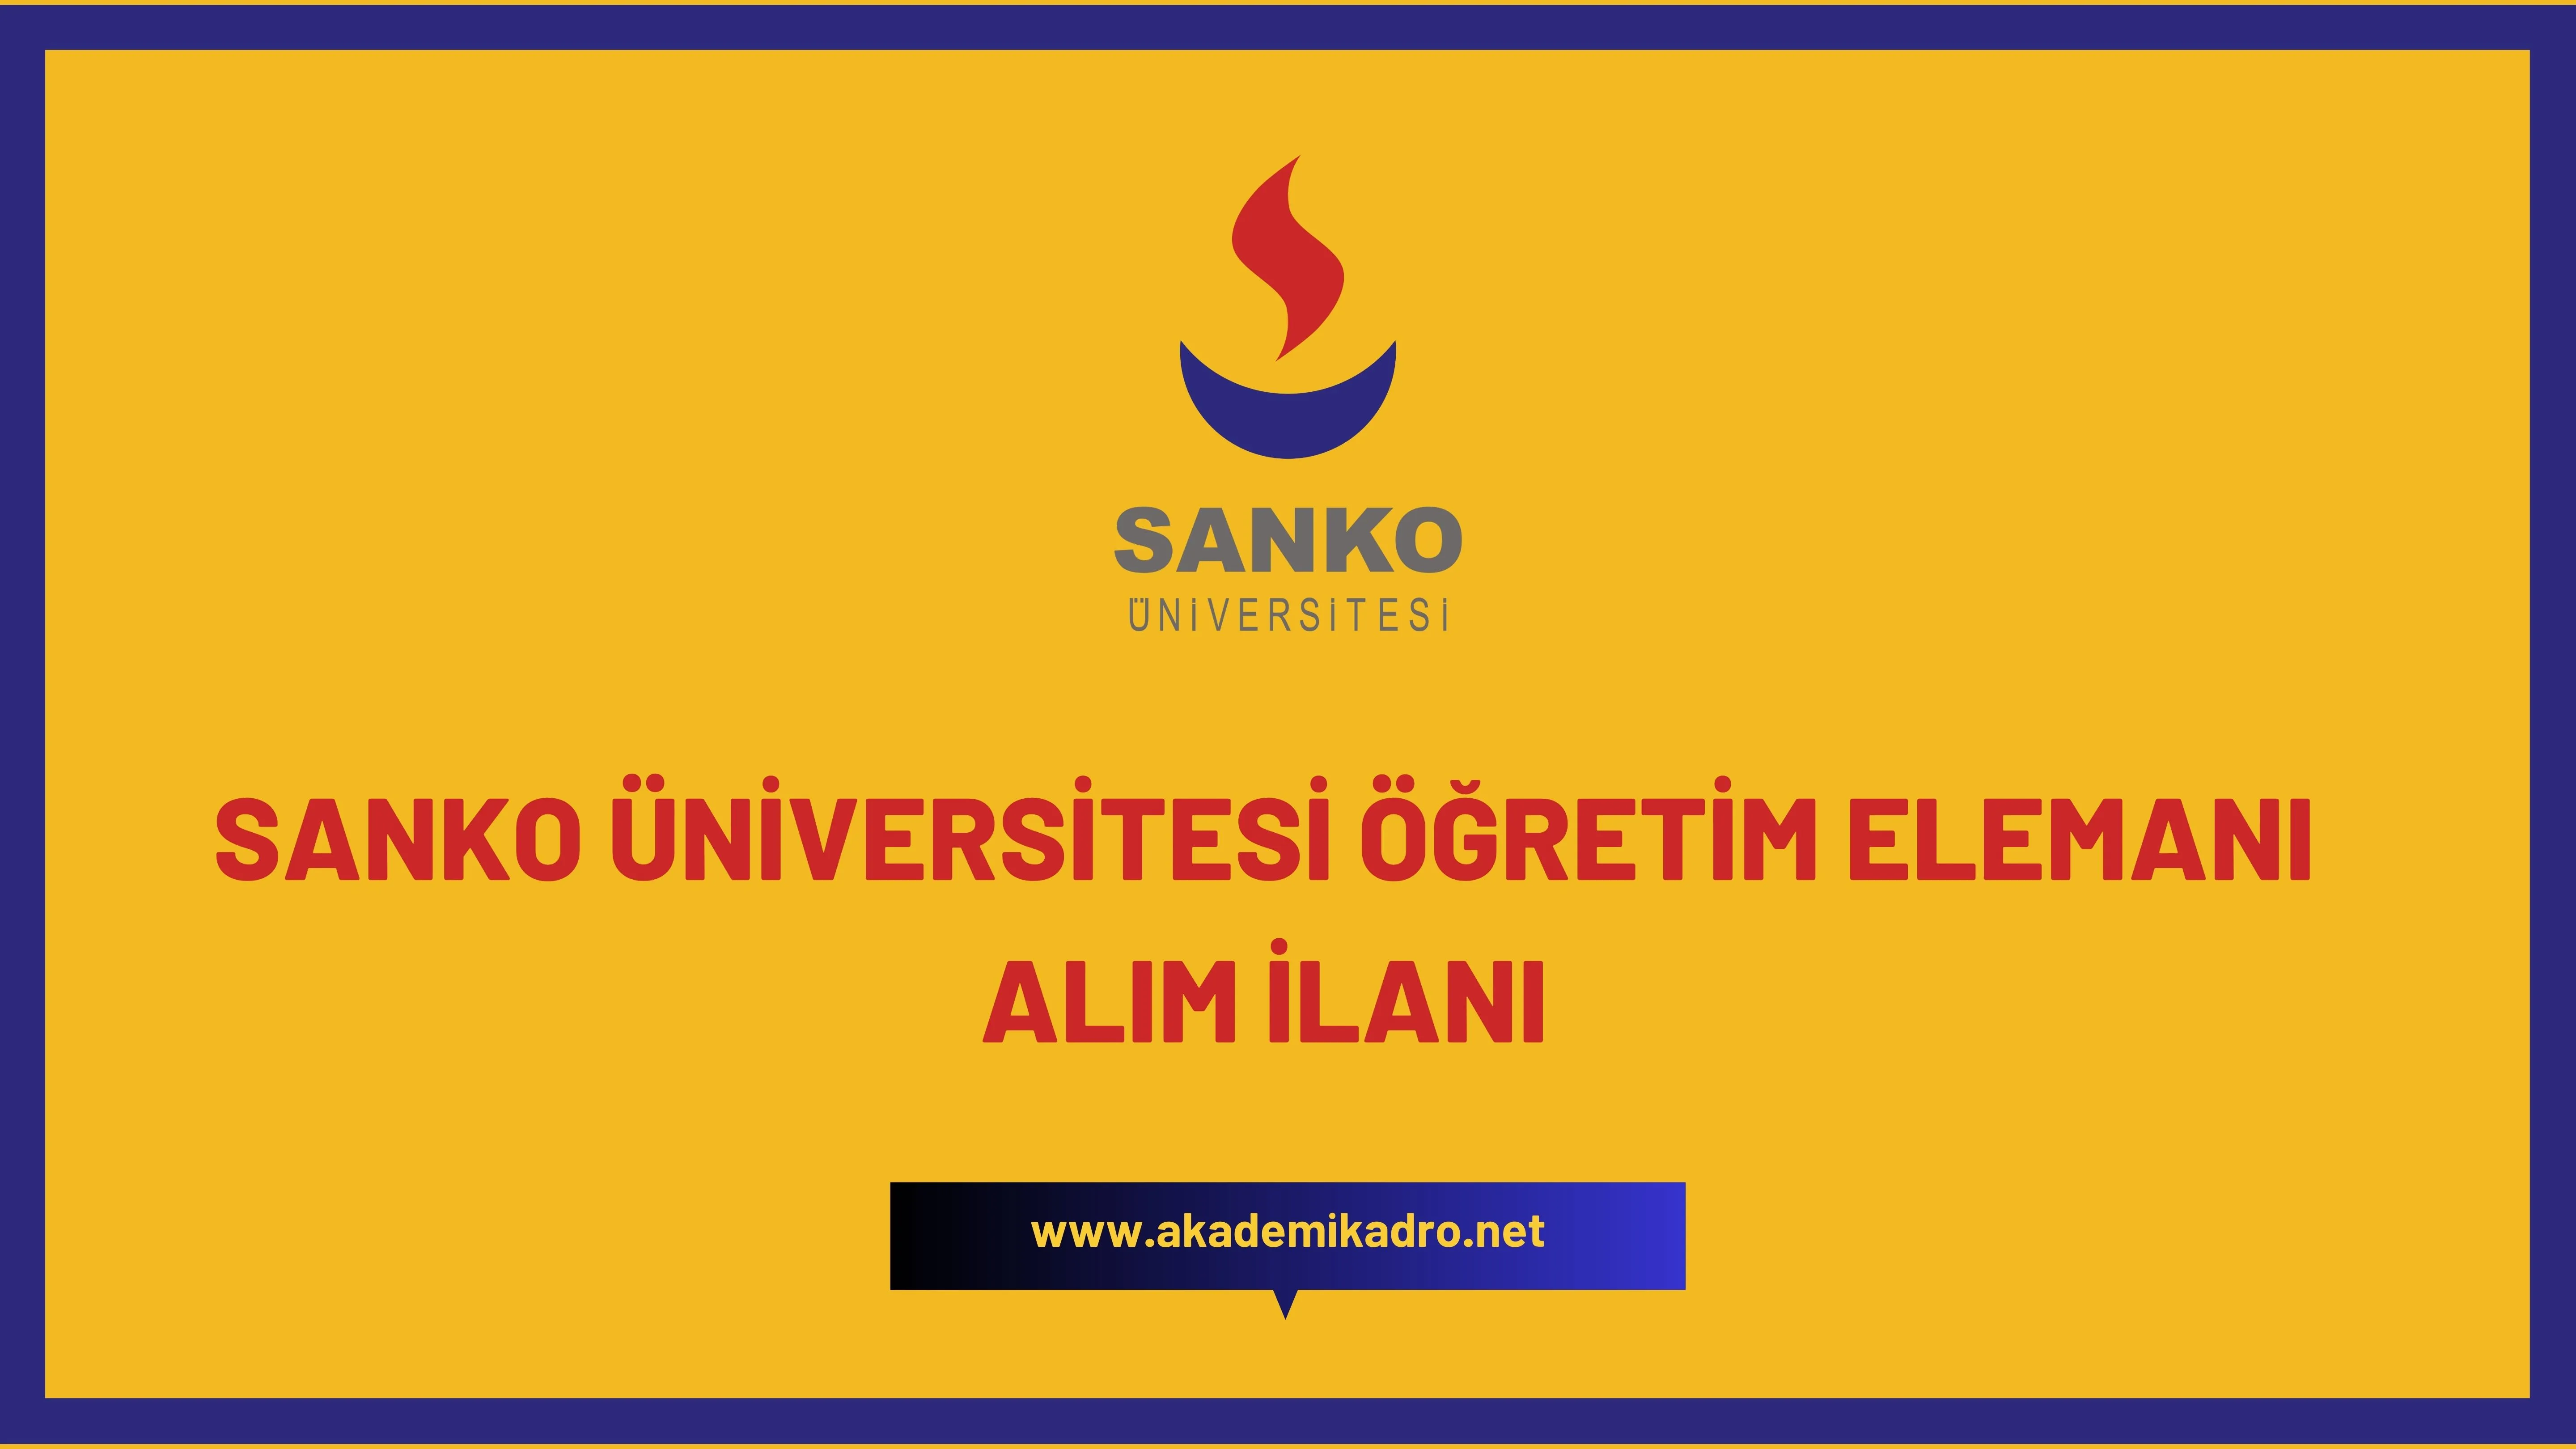 SANKO Üniversitesi Öğretim görevlisi ve öğretim üyesi olmak üzere 28 Öğretim elemanı alacak.